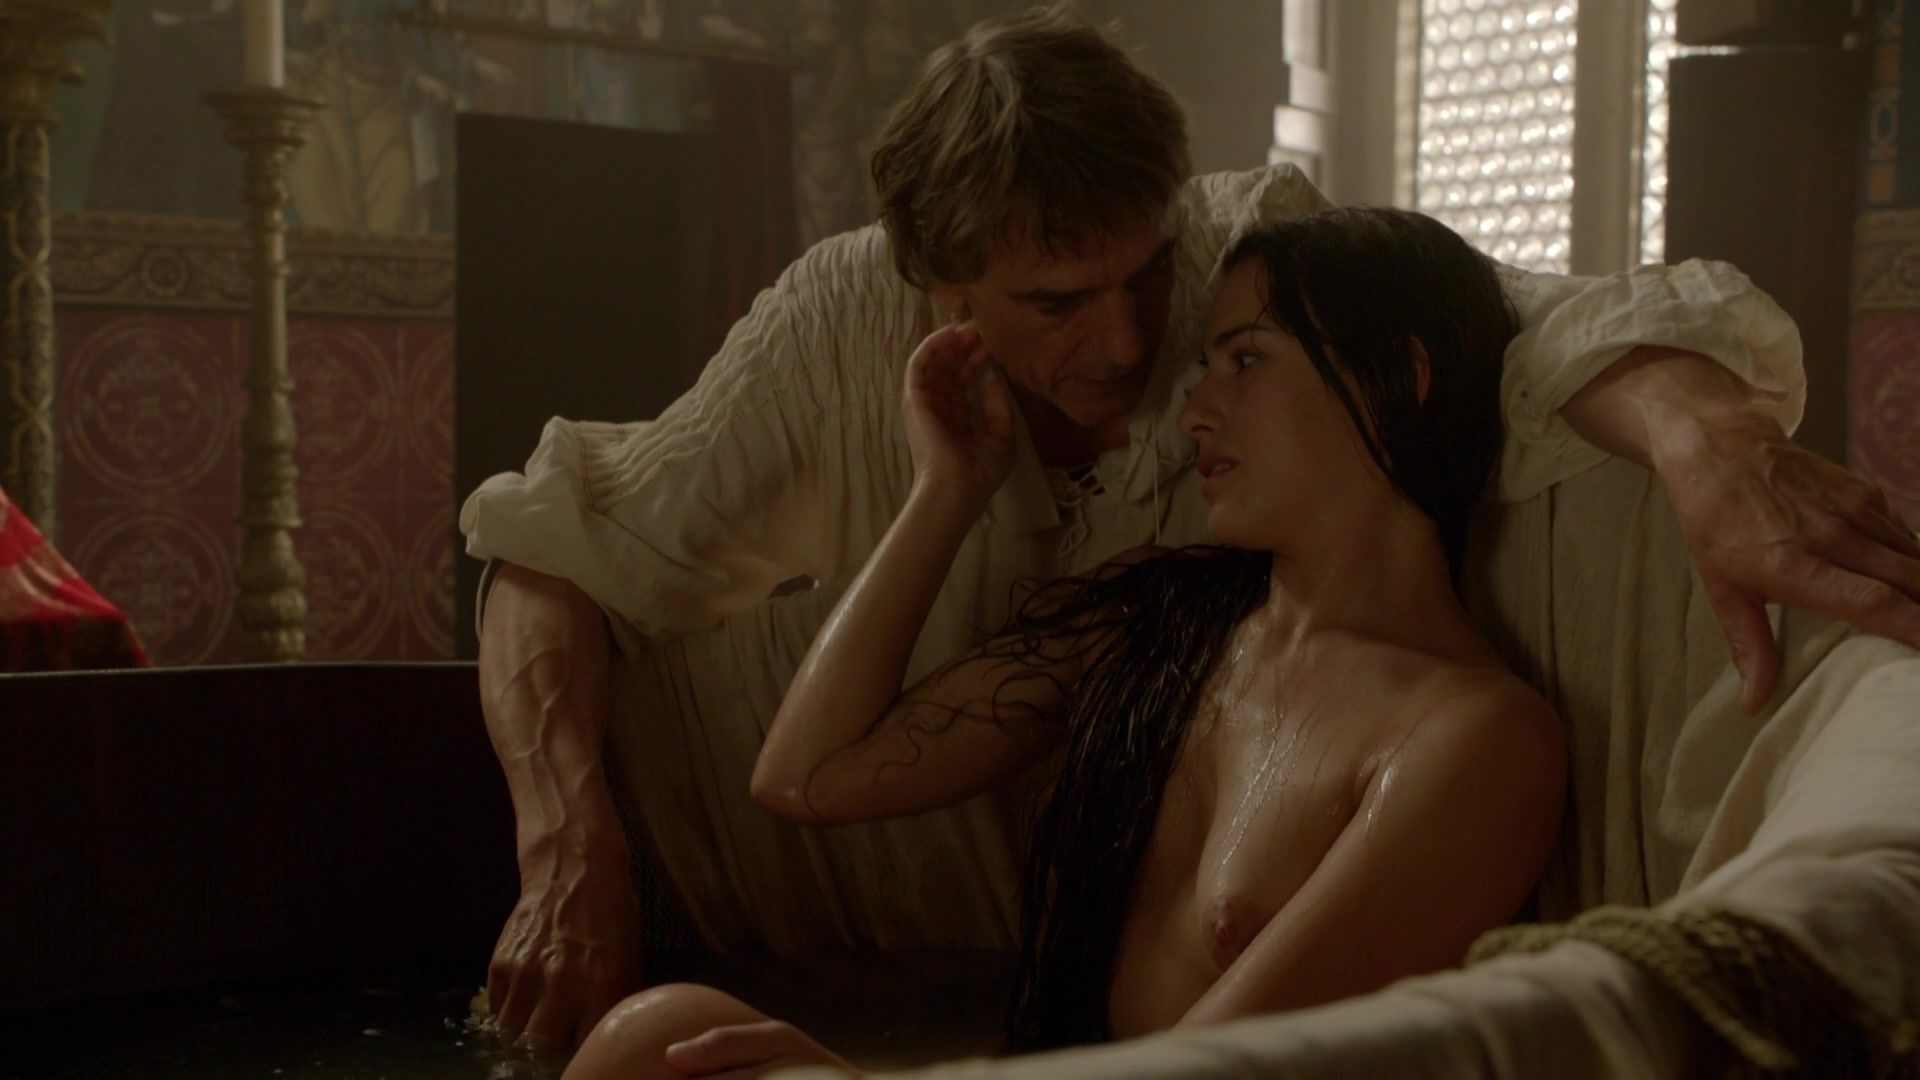 Oral Sex Melia Kreiling topless video | TV movie "The Borgias" EroticBeauties